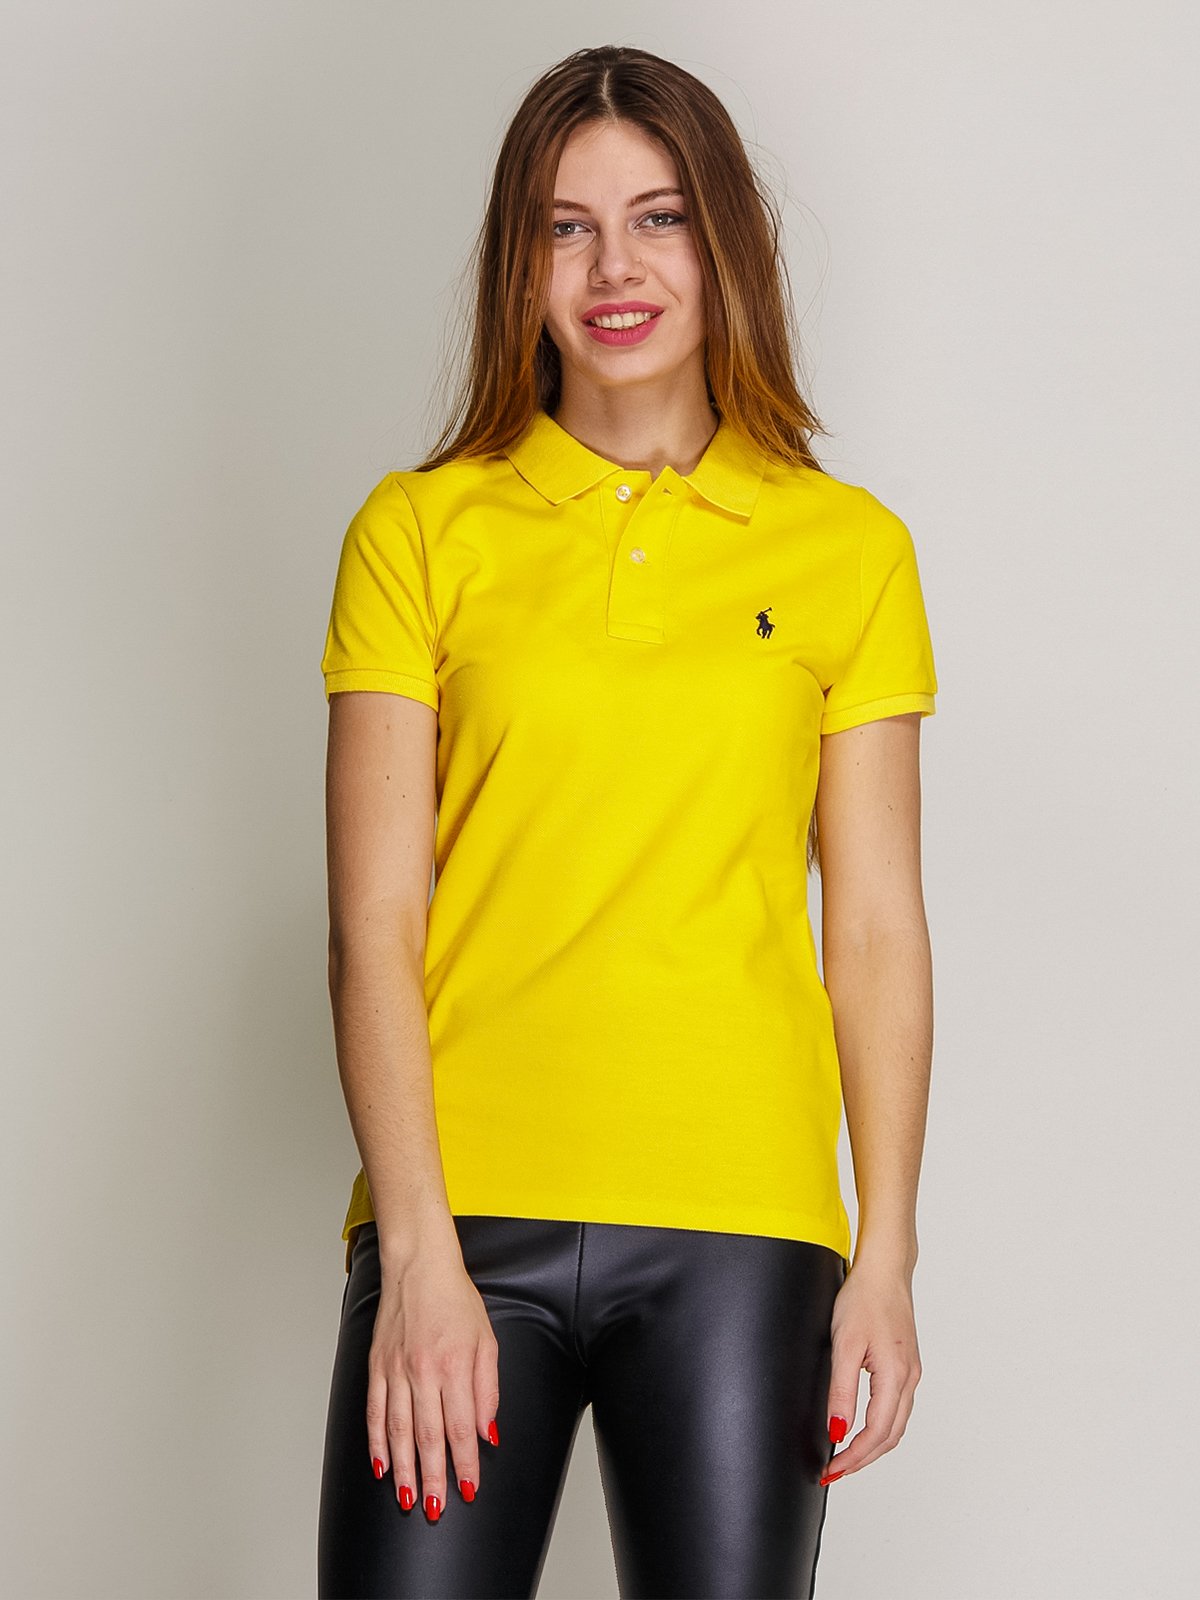 Желтая женская футболка